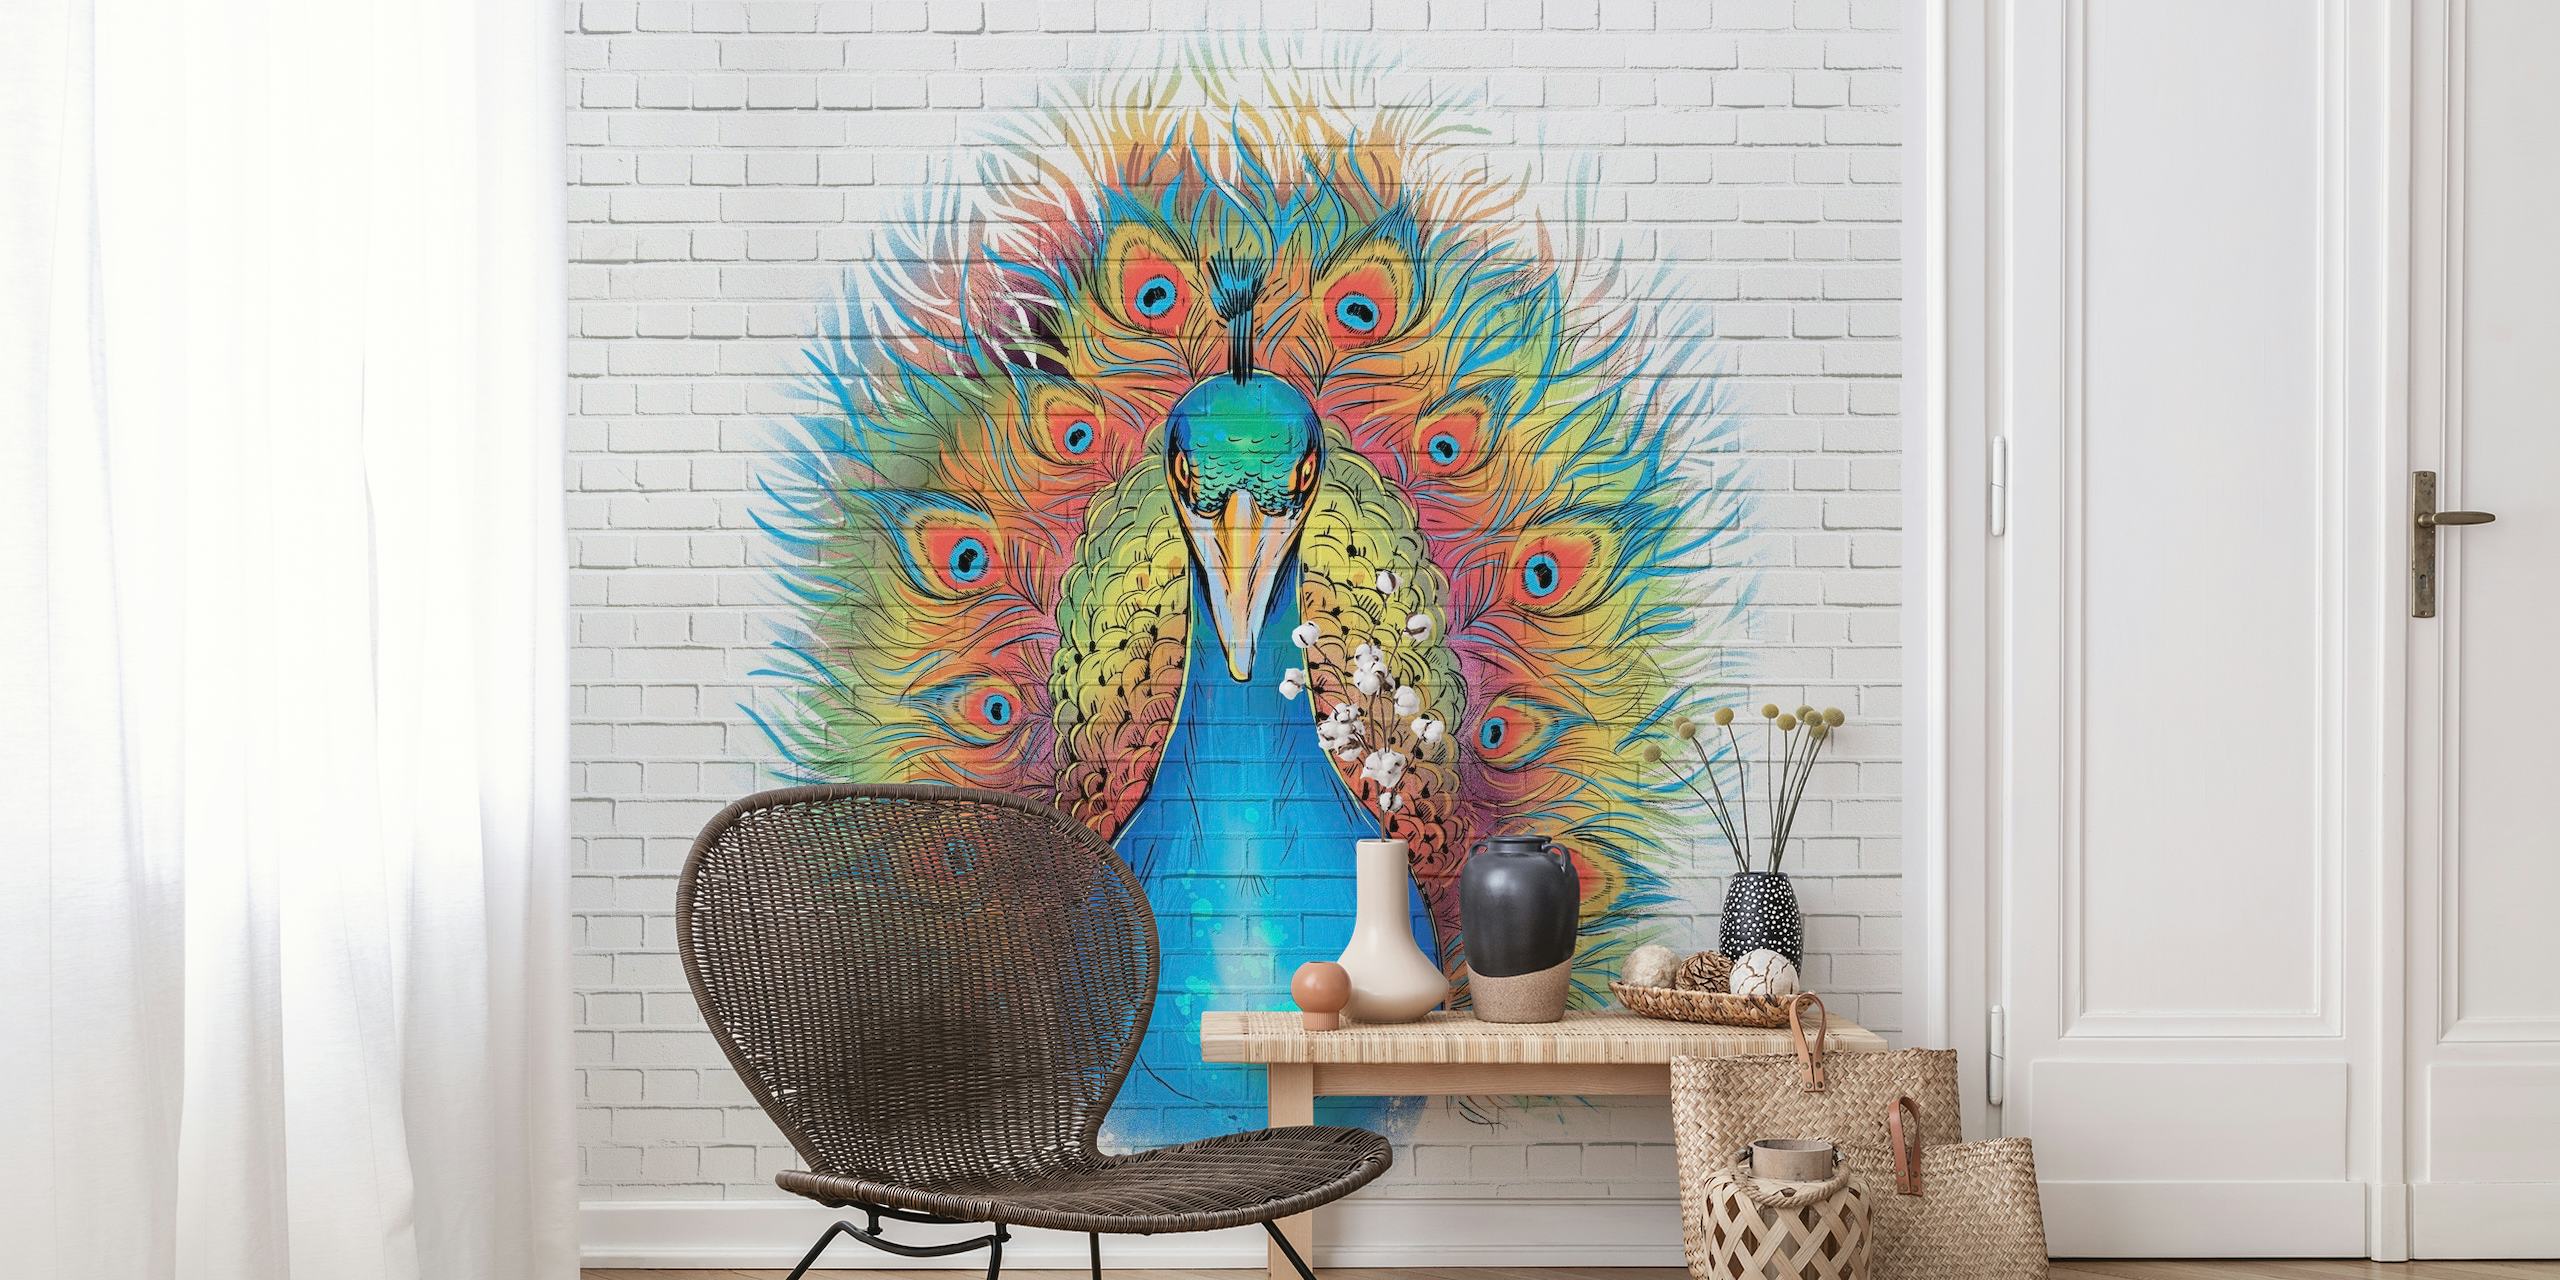 Fototapeta Angry Peacock Graffiti inspirovaná street artem s živými barvami na pozadí z bílých cihel